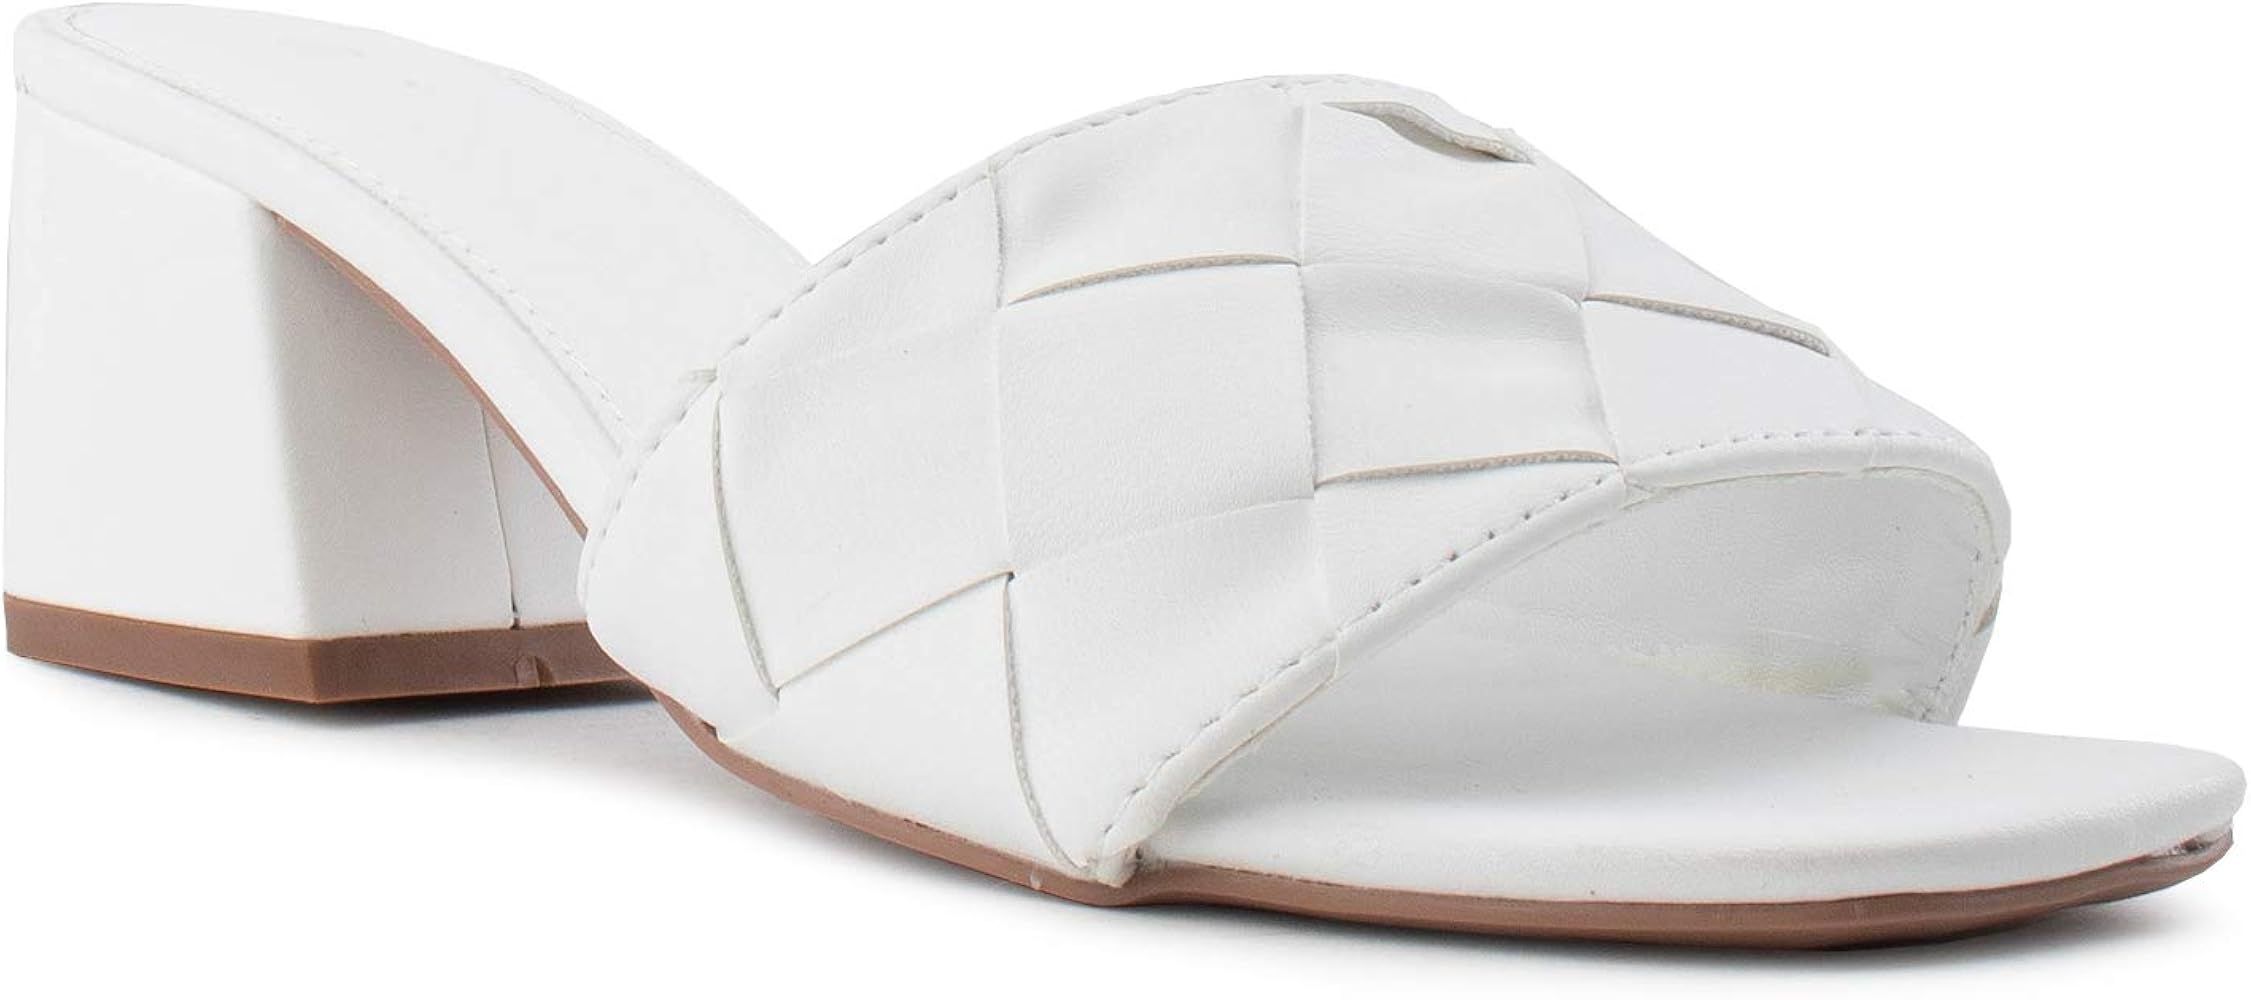 RF ROOM OF FASHION Women's Open Toe Slip On Mule Block Heel Sandals | Amazon (US)